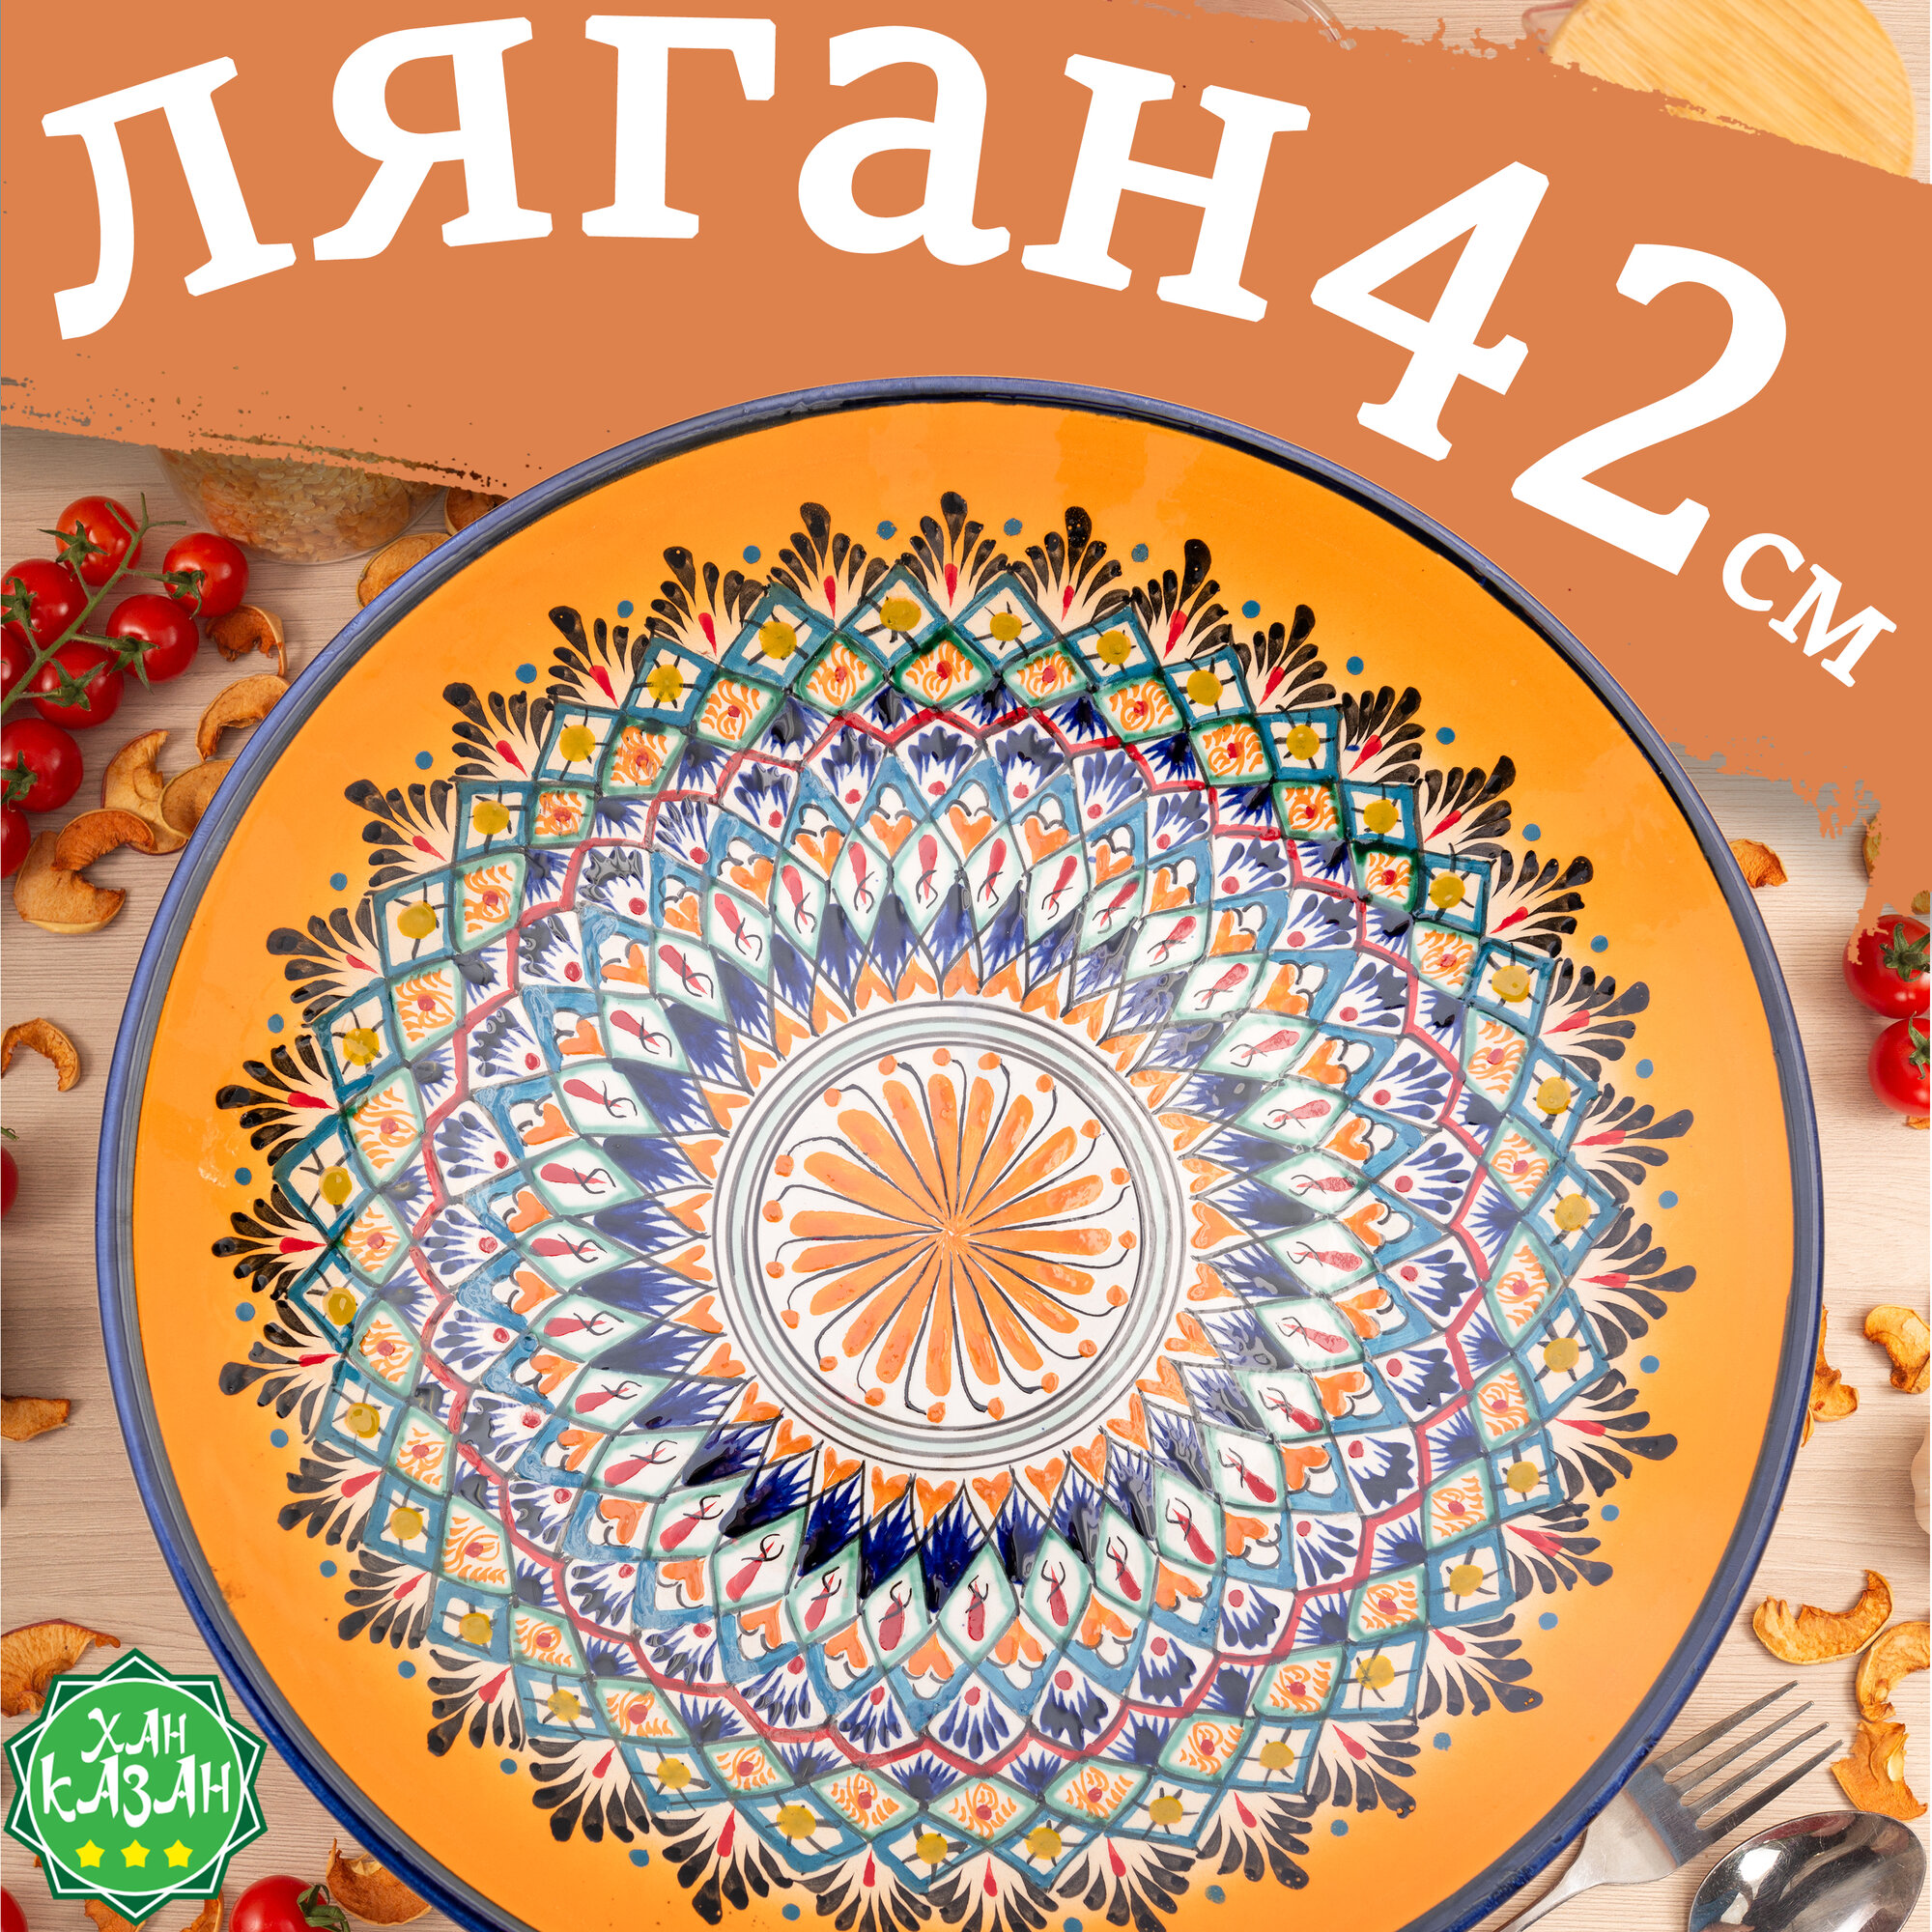 Ляган 42см узбекский